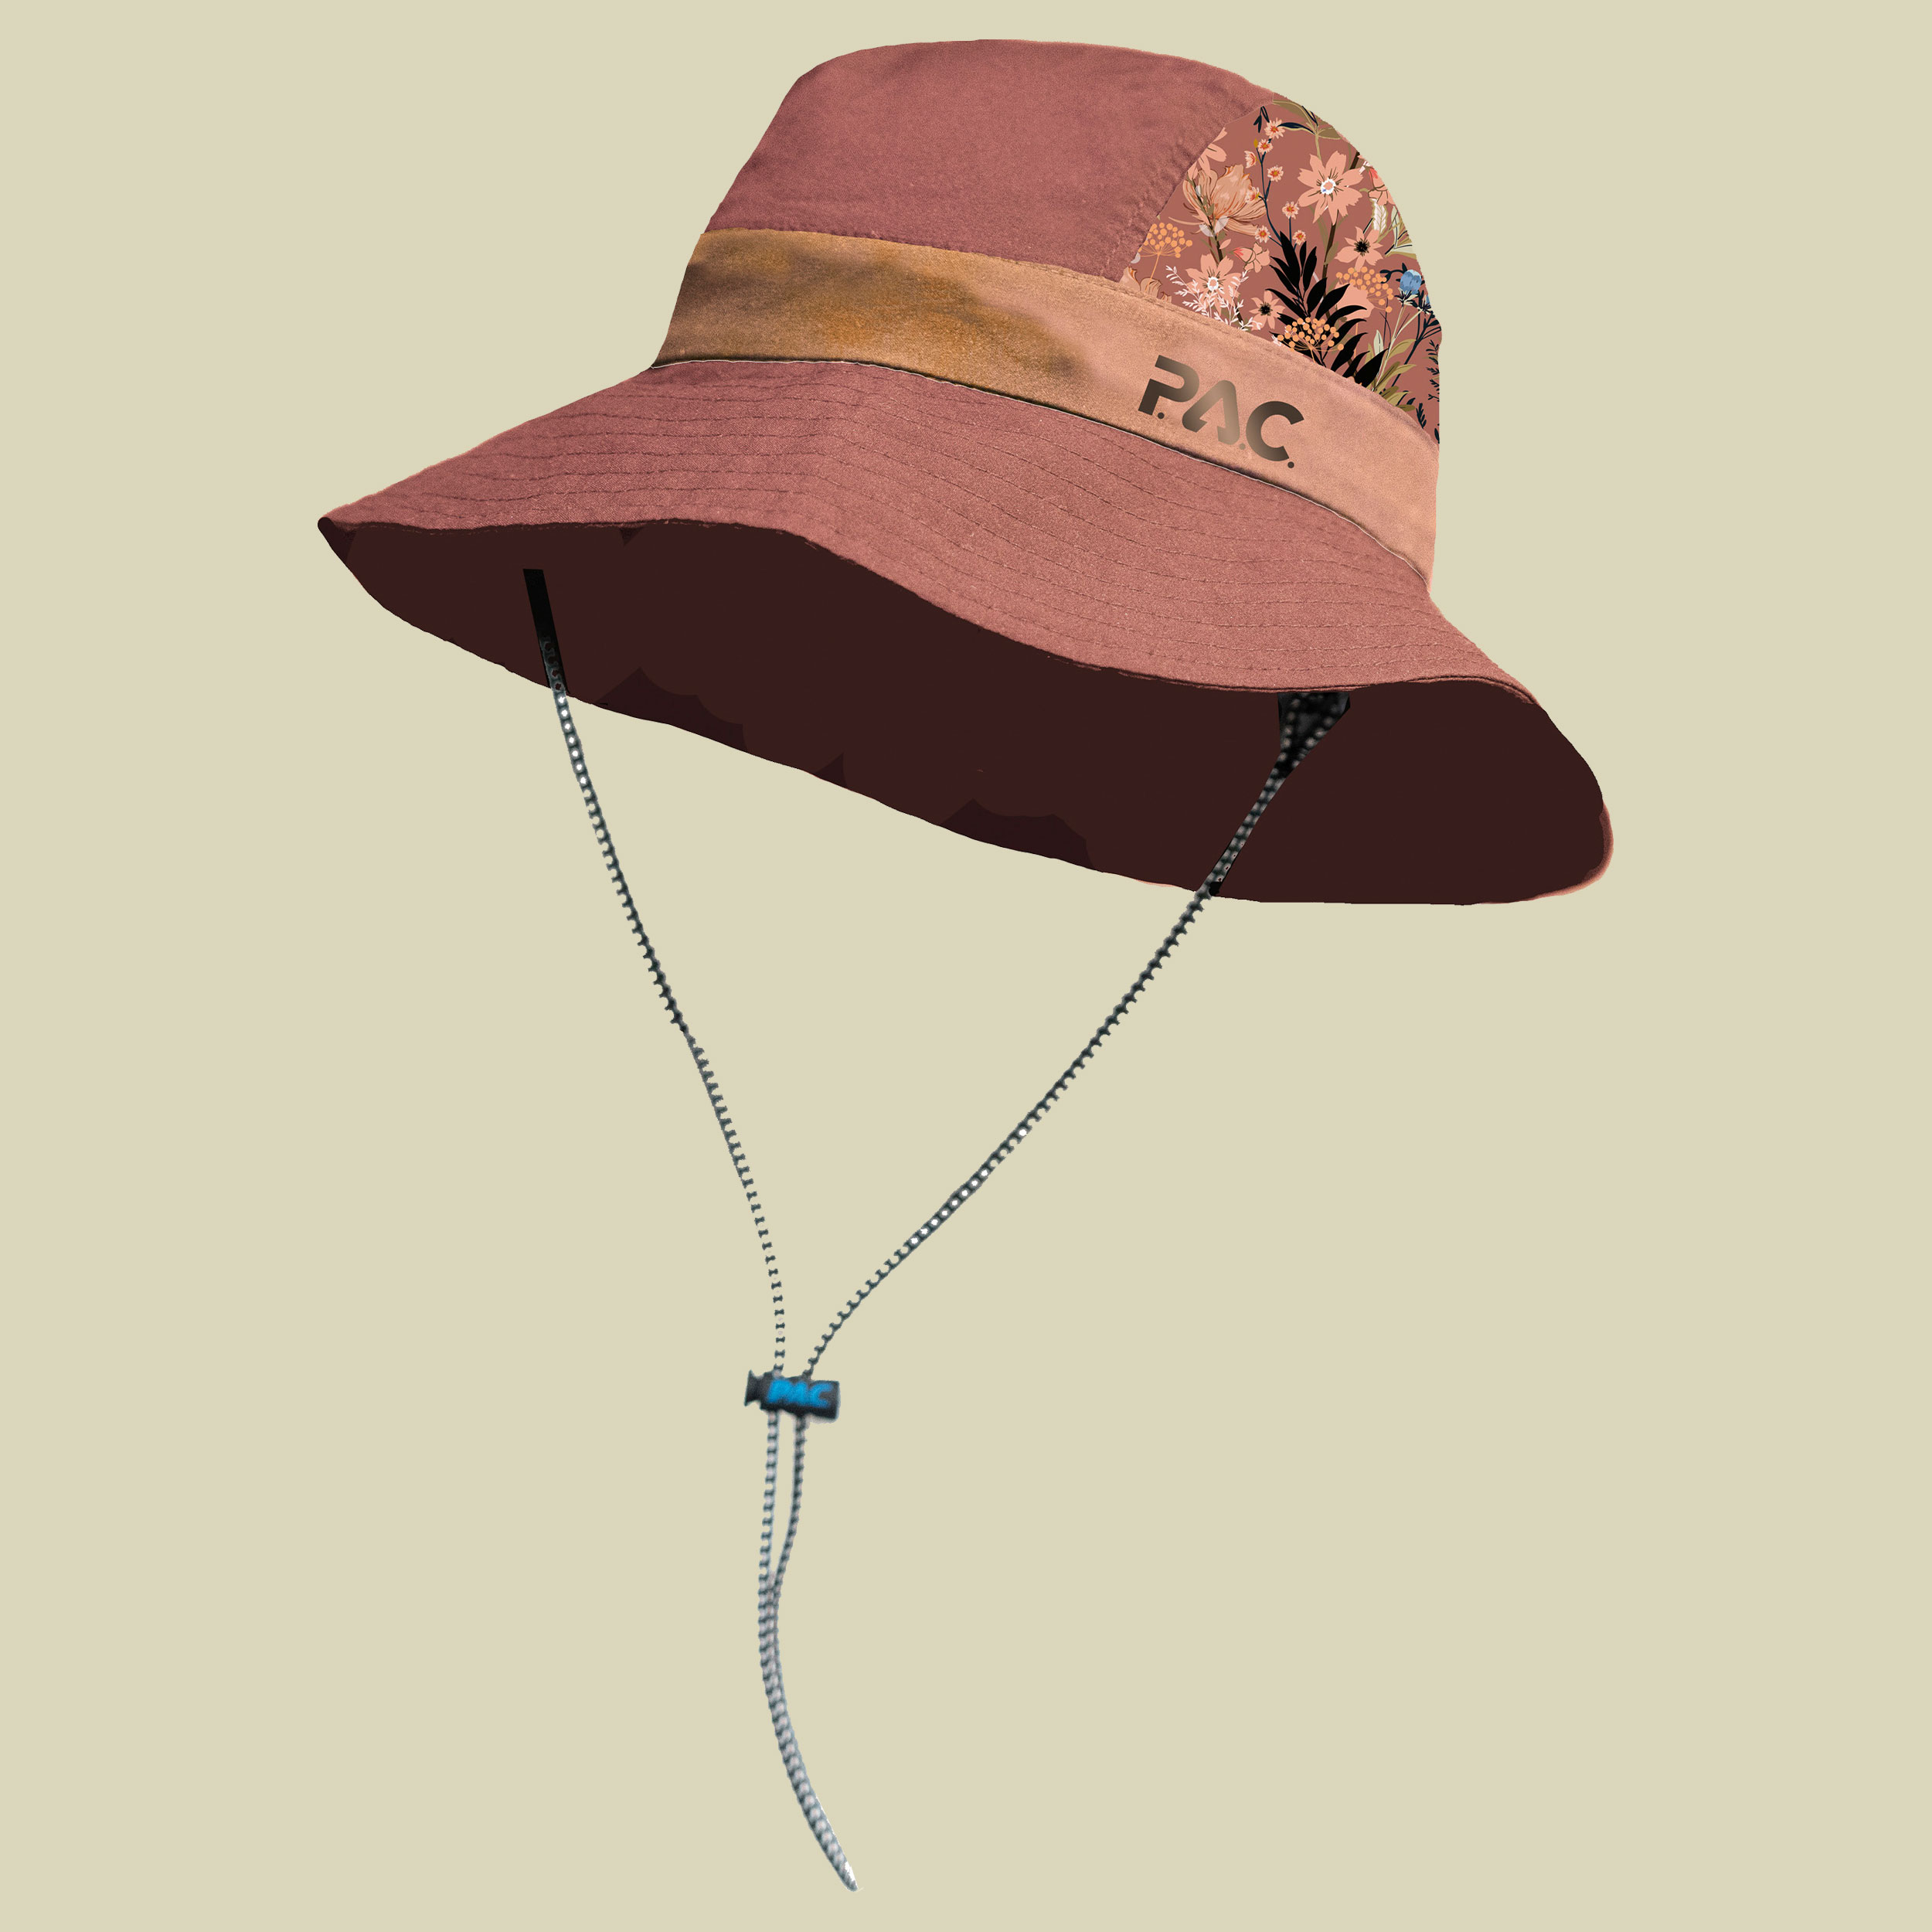 P.A.C. Bonnie Hat Clyde one size rosa - rose floratis AOP